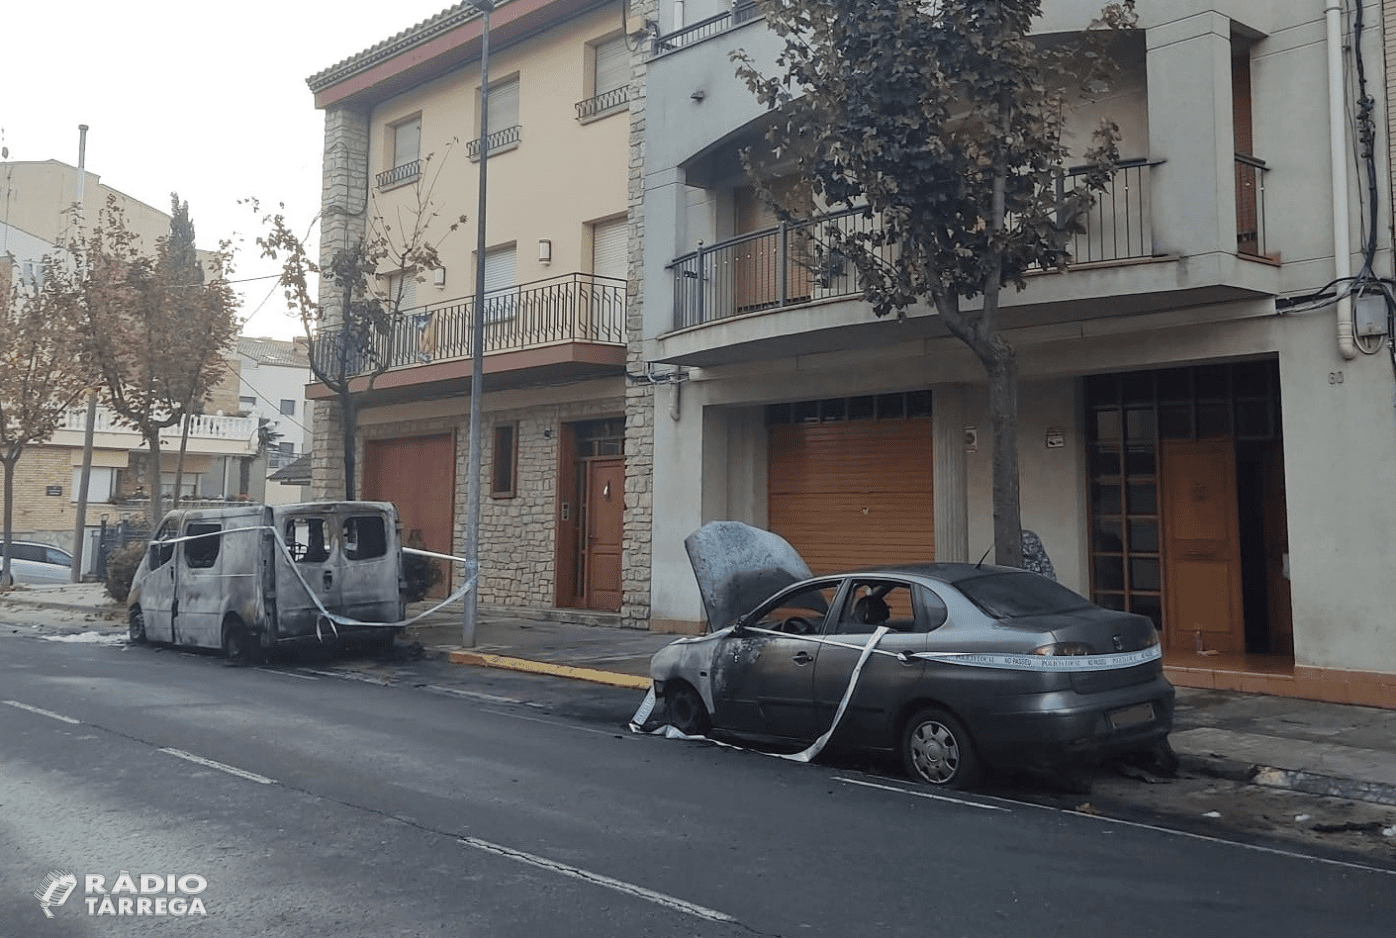 Incendi en dos vehicles estacionats a l'avinguda Generalitat de Tàrrega